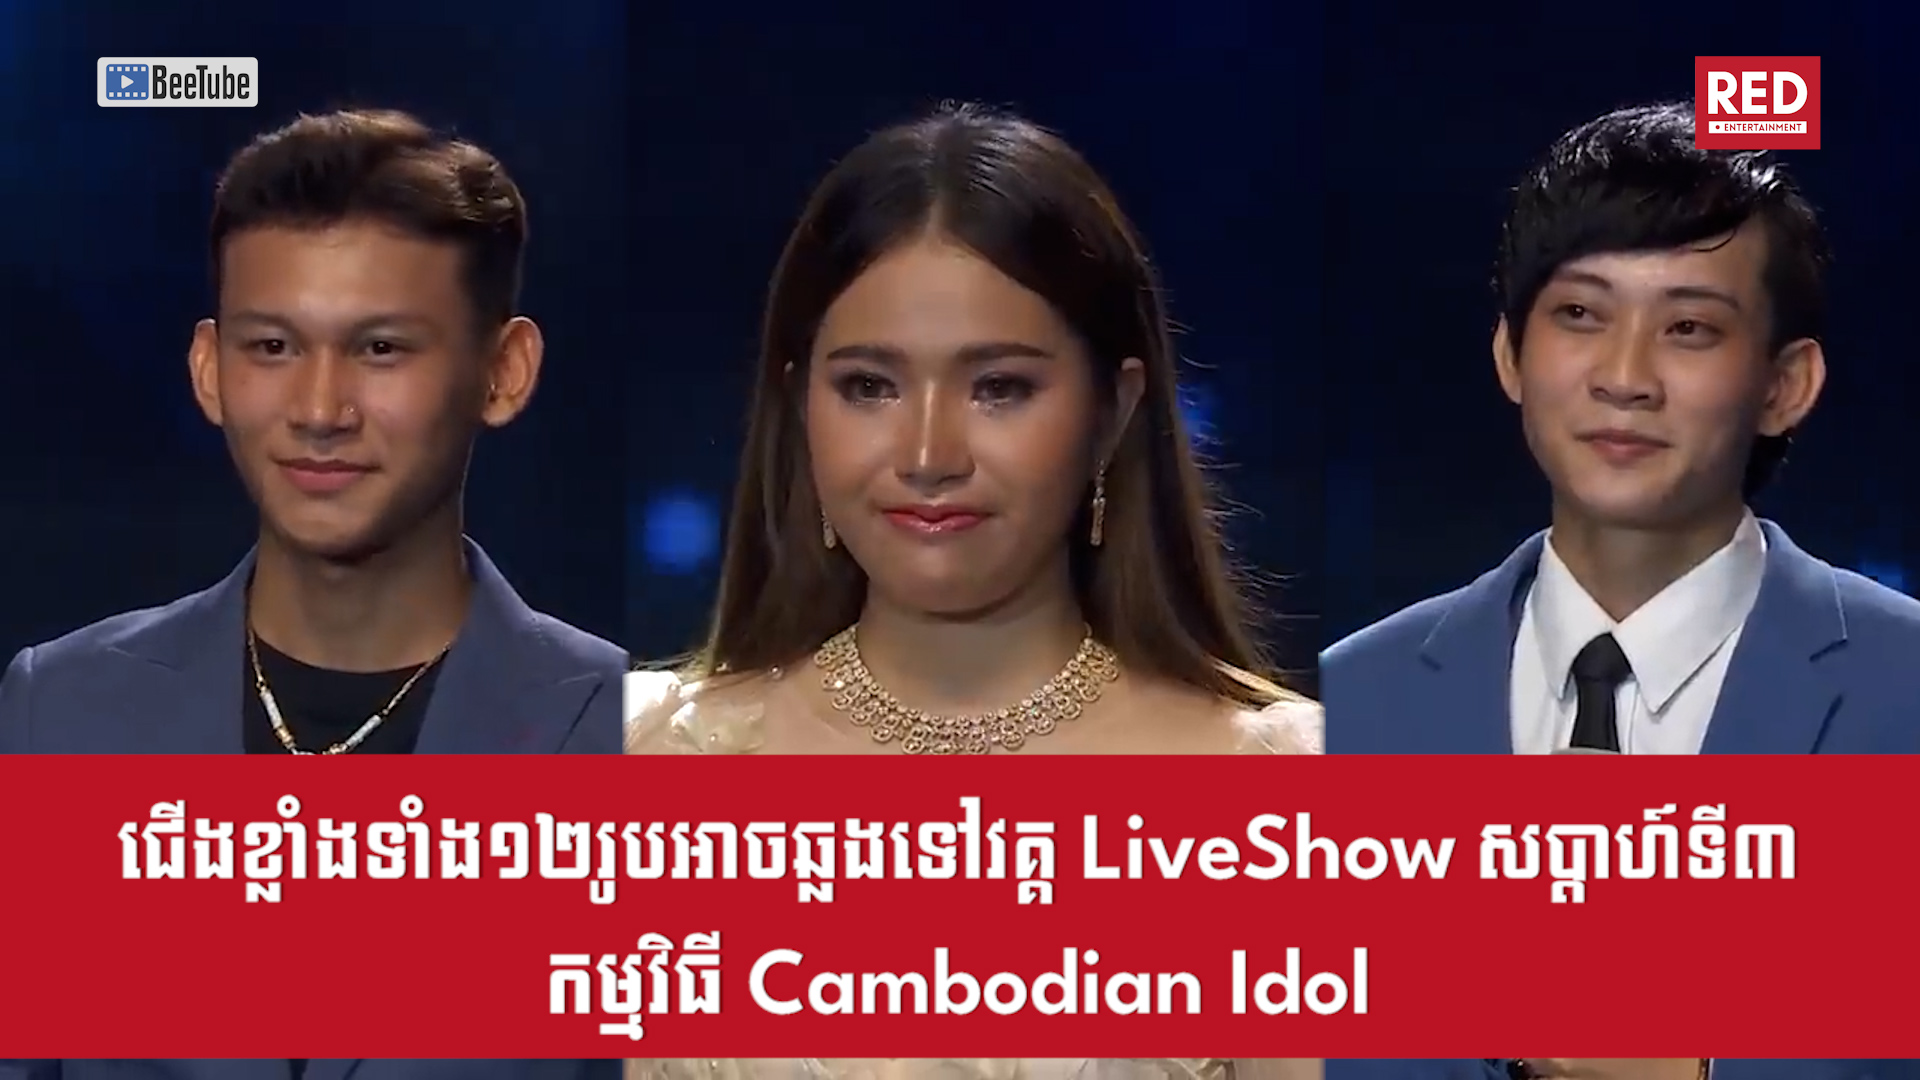 ជើងខ្លាំងទាំង១២រូបអាចឆ្លងទៅកាន់វគ្គ LIve Show សប្តាហ៍ទី៣នៃកម្មវិធី Cambodian Idol